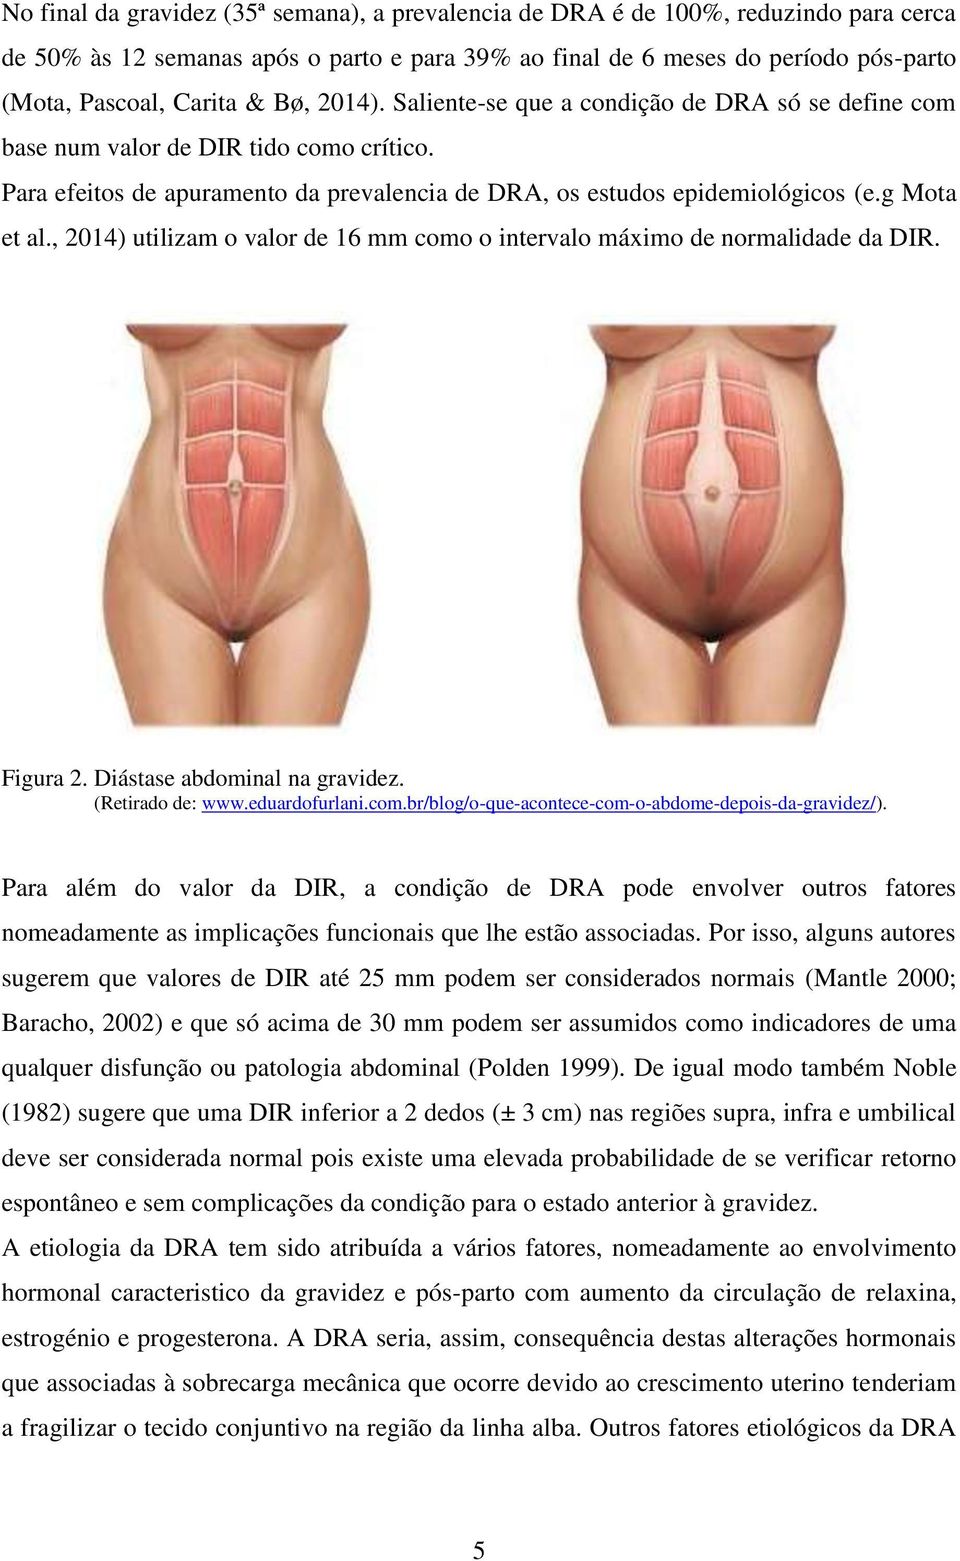 , 2014) utilizam o valor de 16 mm como o intervalo máximo de normalidade da DIR. Figura 2. Diástase abdominal na gravidez. (Retirado de: www.eduardofurlani.com.br/blog/o-que-acontece-com-o-abdome-depois-da-gravidez/).